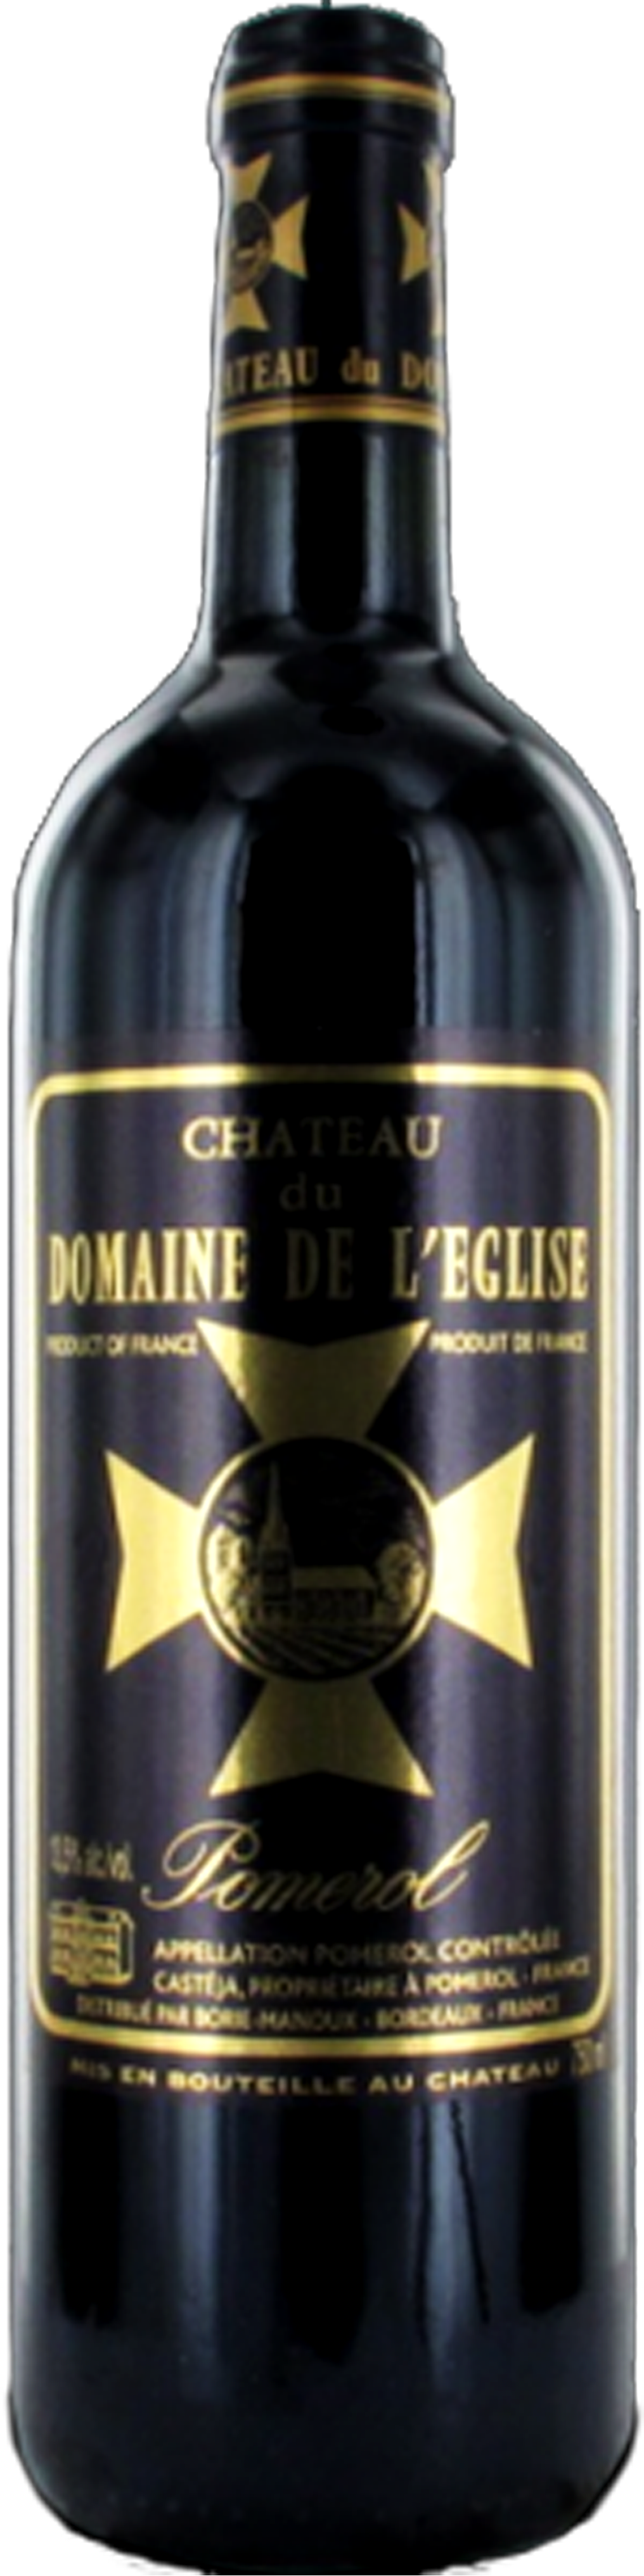 Image of product Château du Domaine de l'Eglise, Pomerol